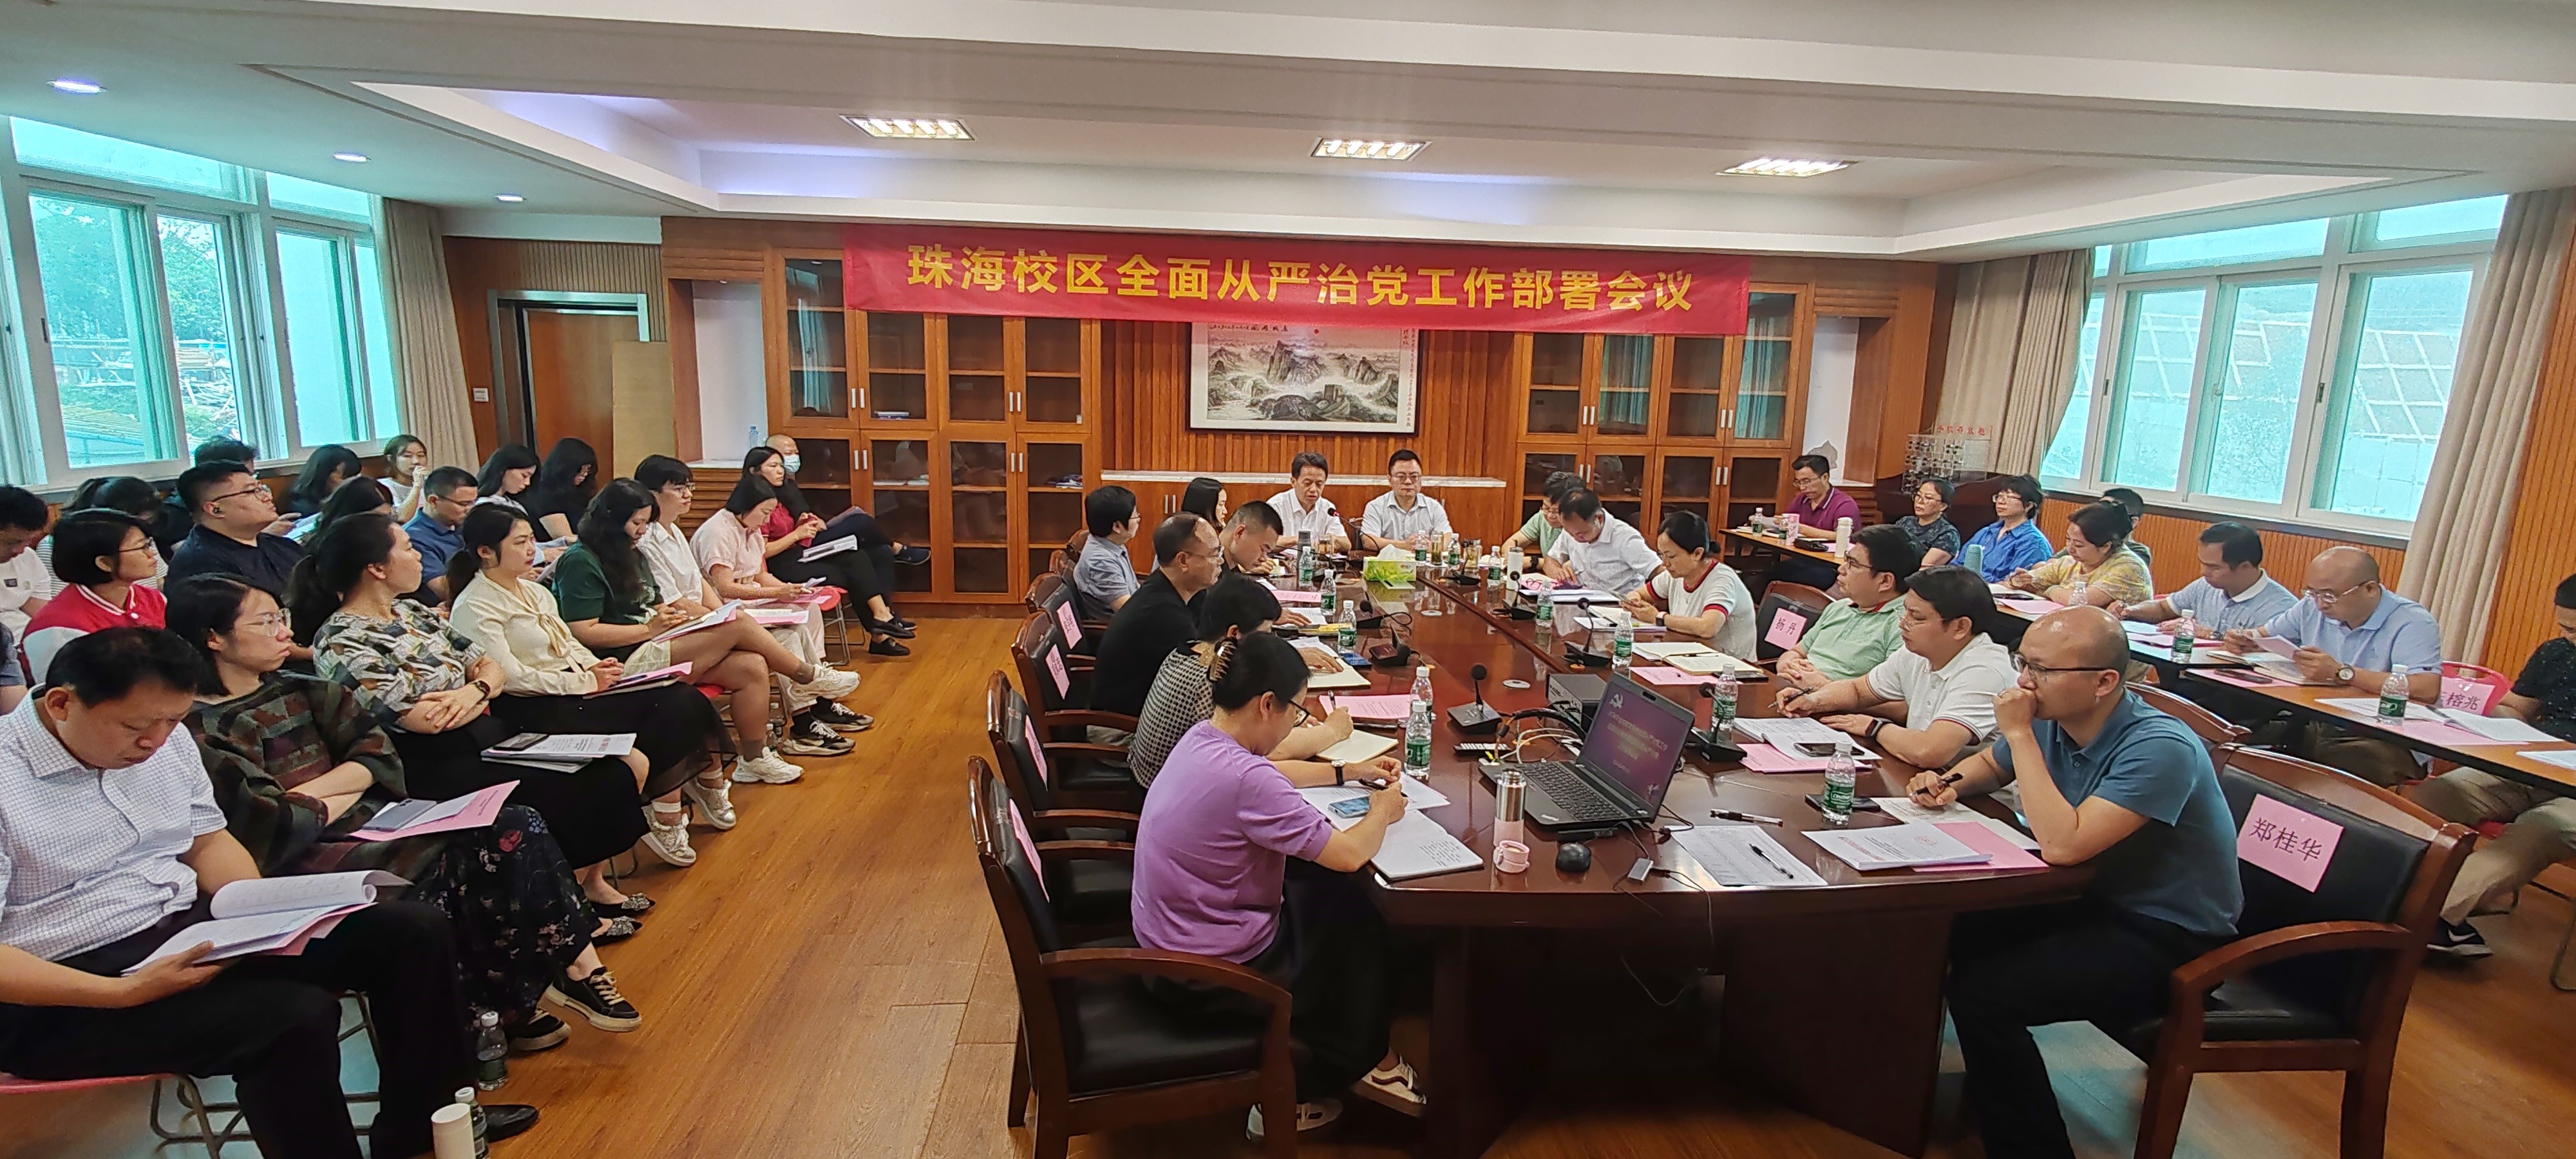 珠海校区党委召开落实全面从严治党主体责任行动工作会议